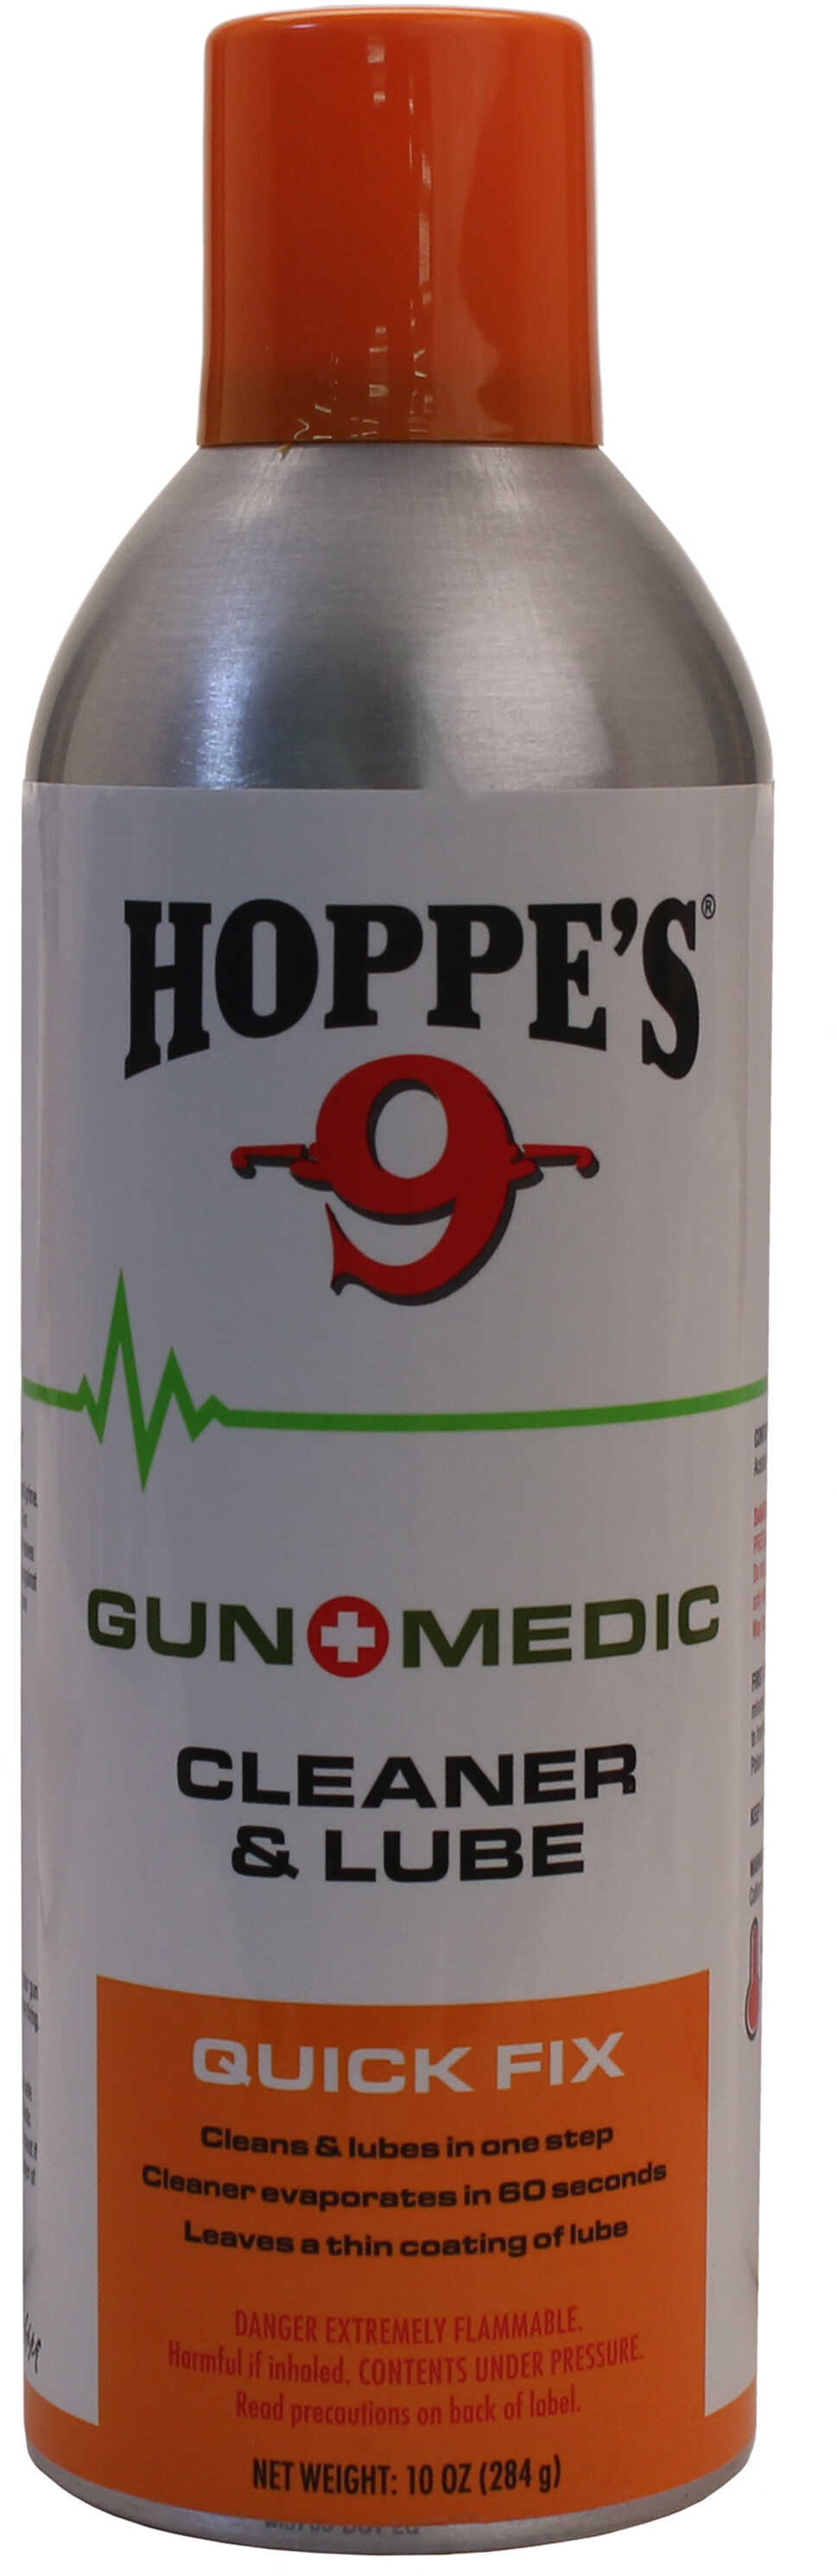 Hop Gun Medic Cleaner & Lube 10Oz